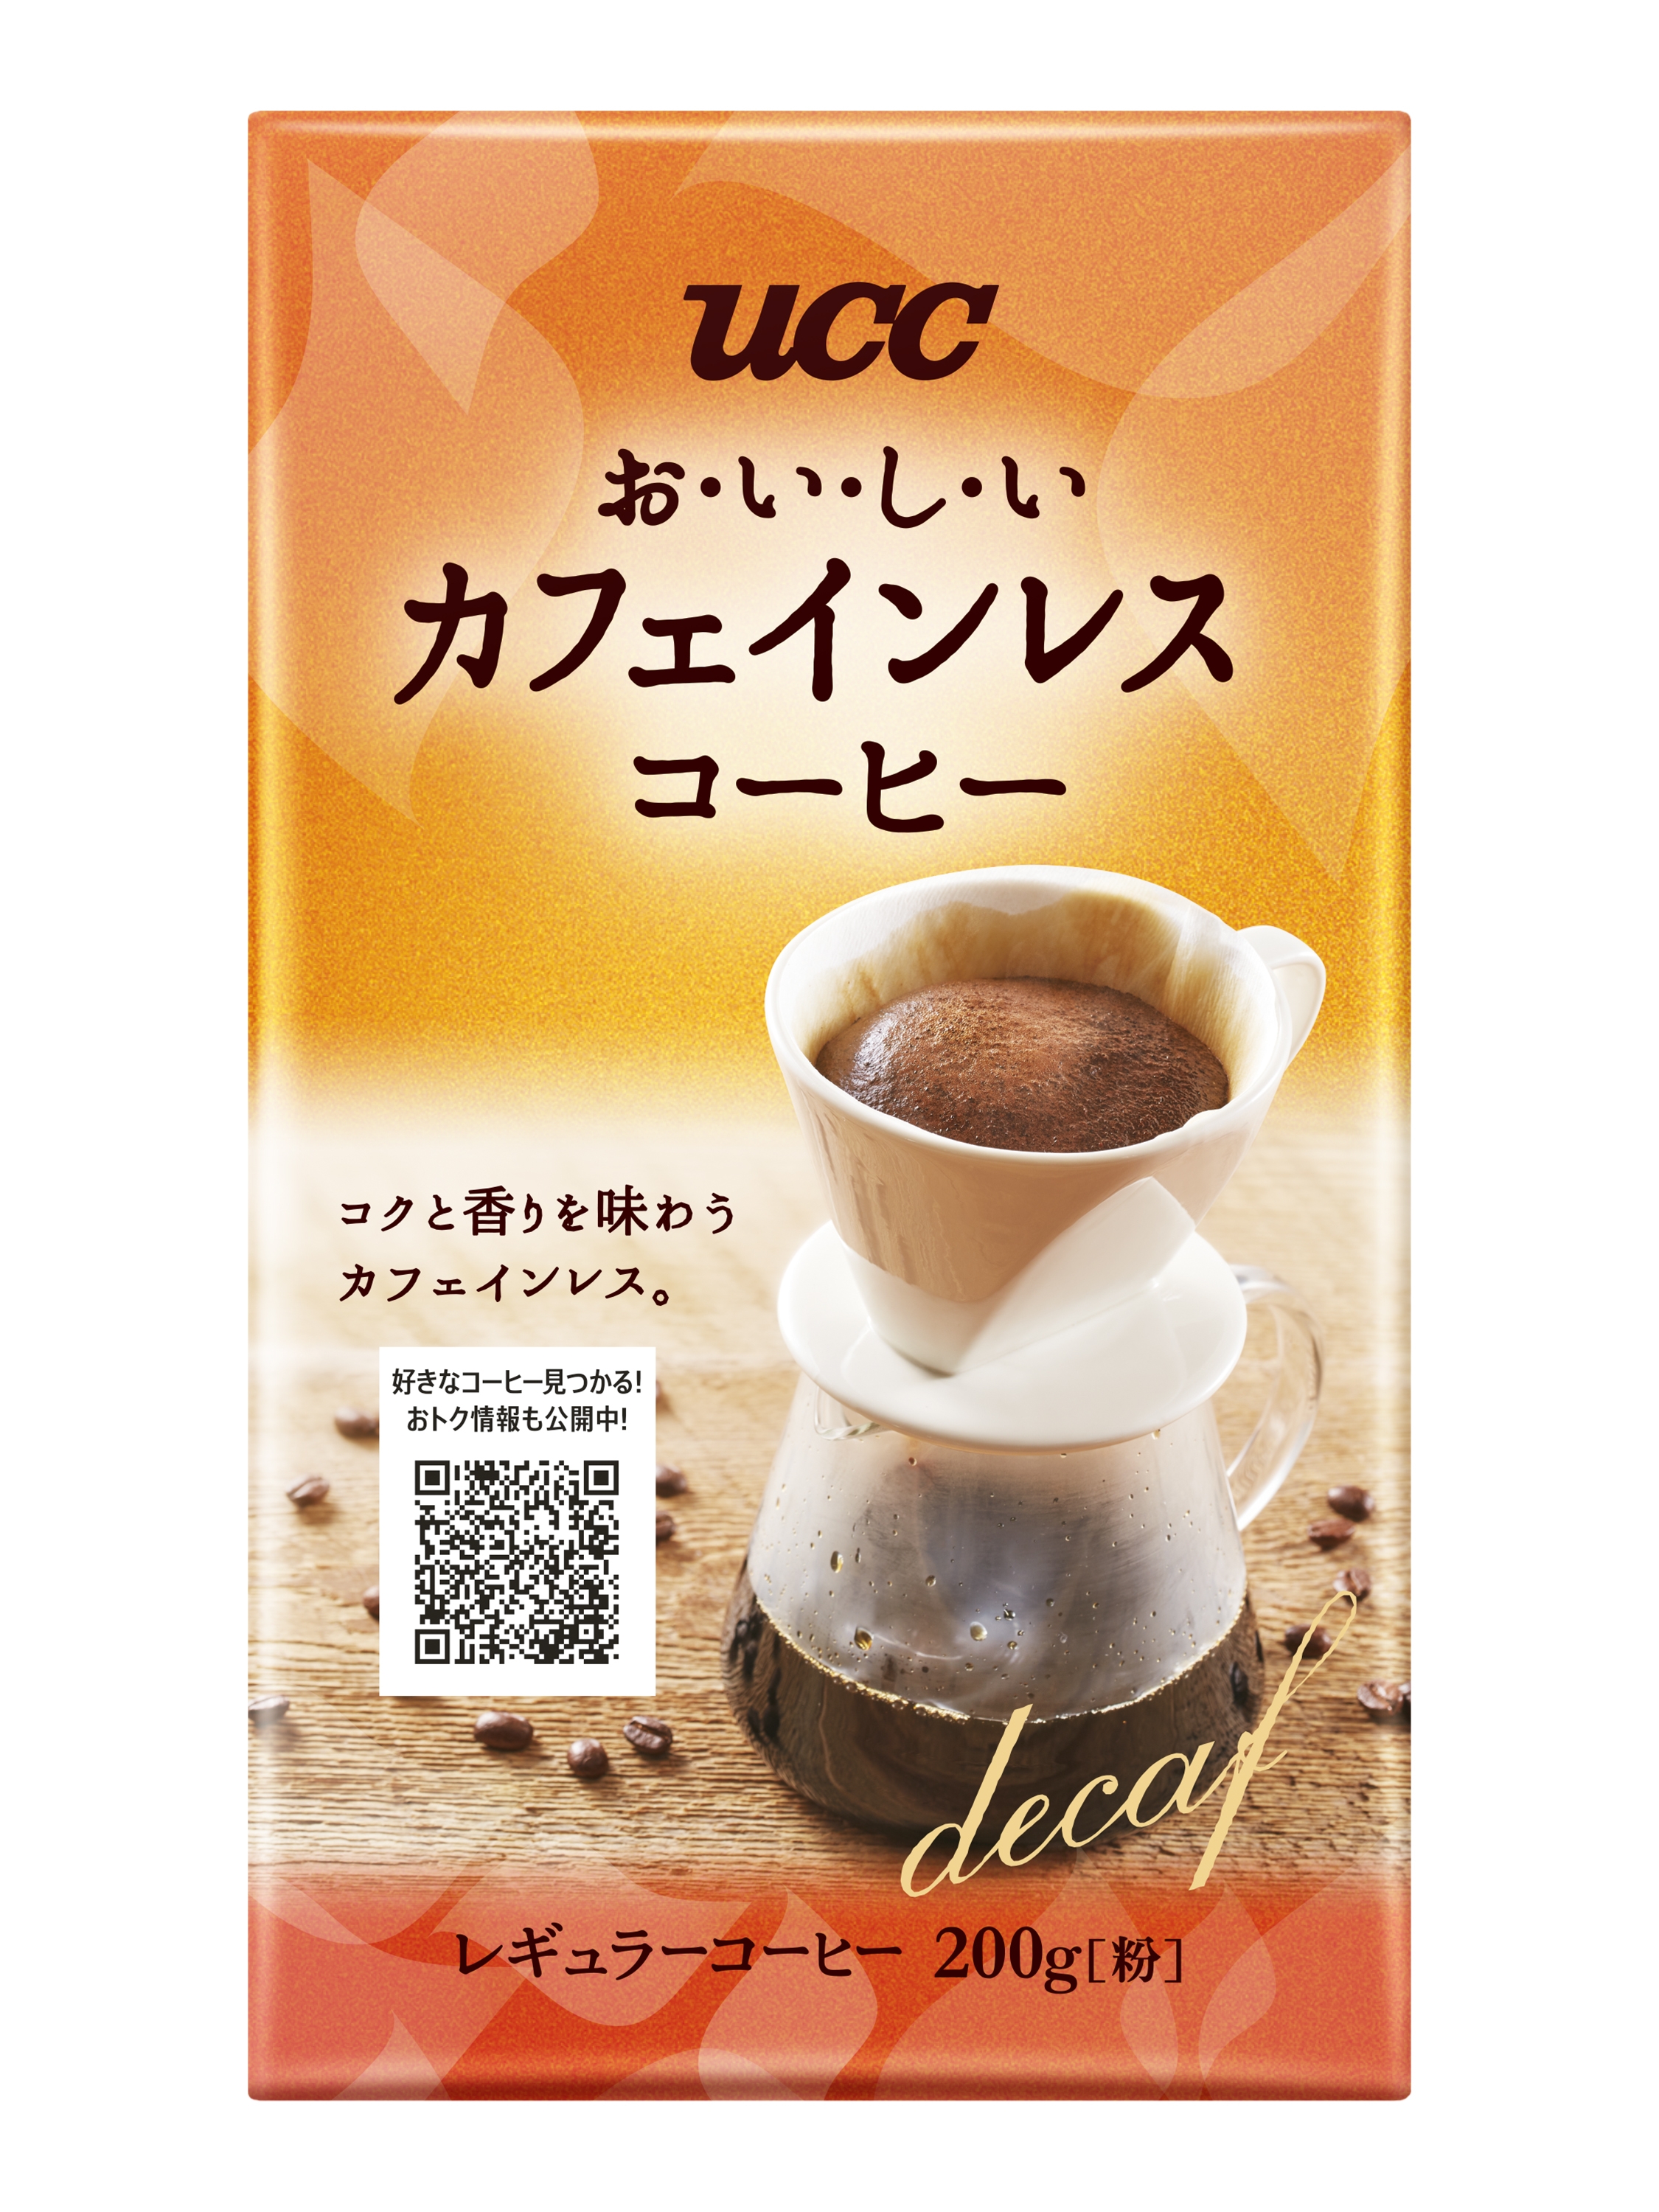 新たなコーヒー習慣を提案『UCCおいしいカフェインレスコーヒー』『UCC